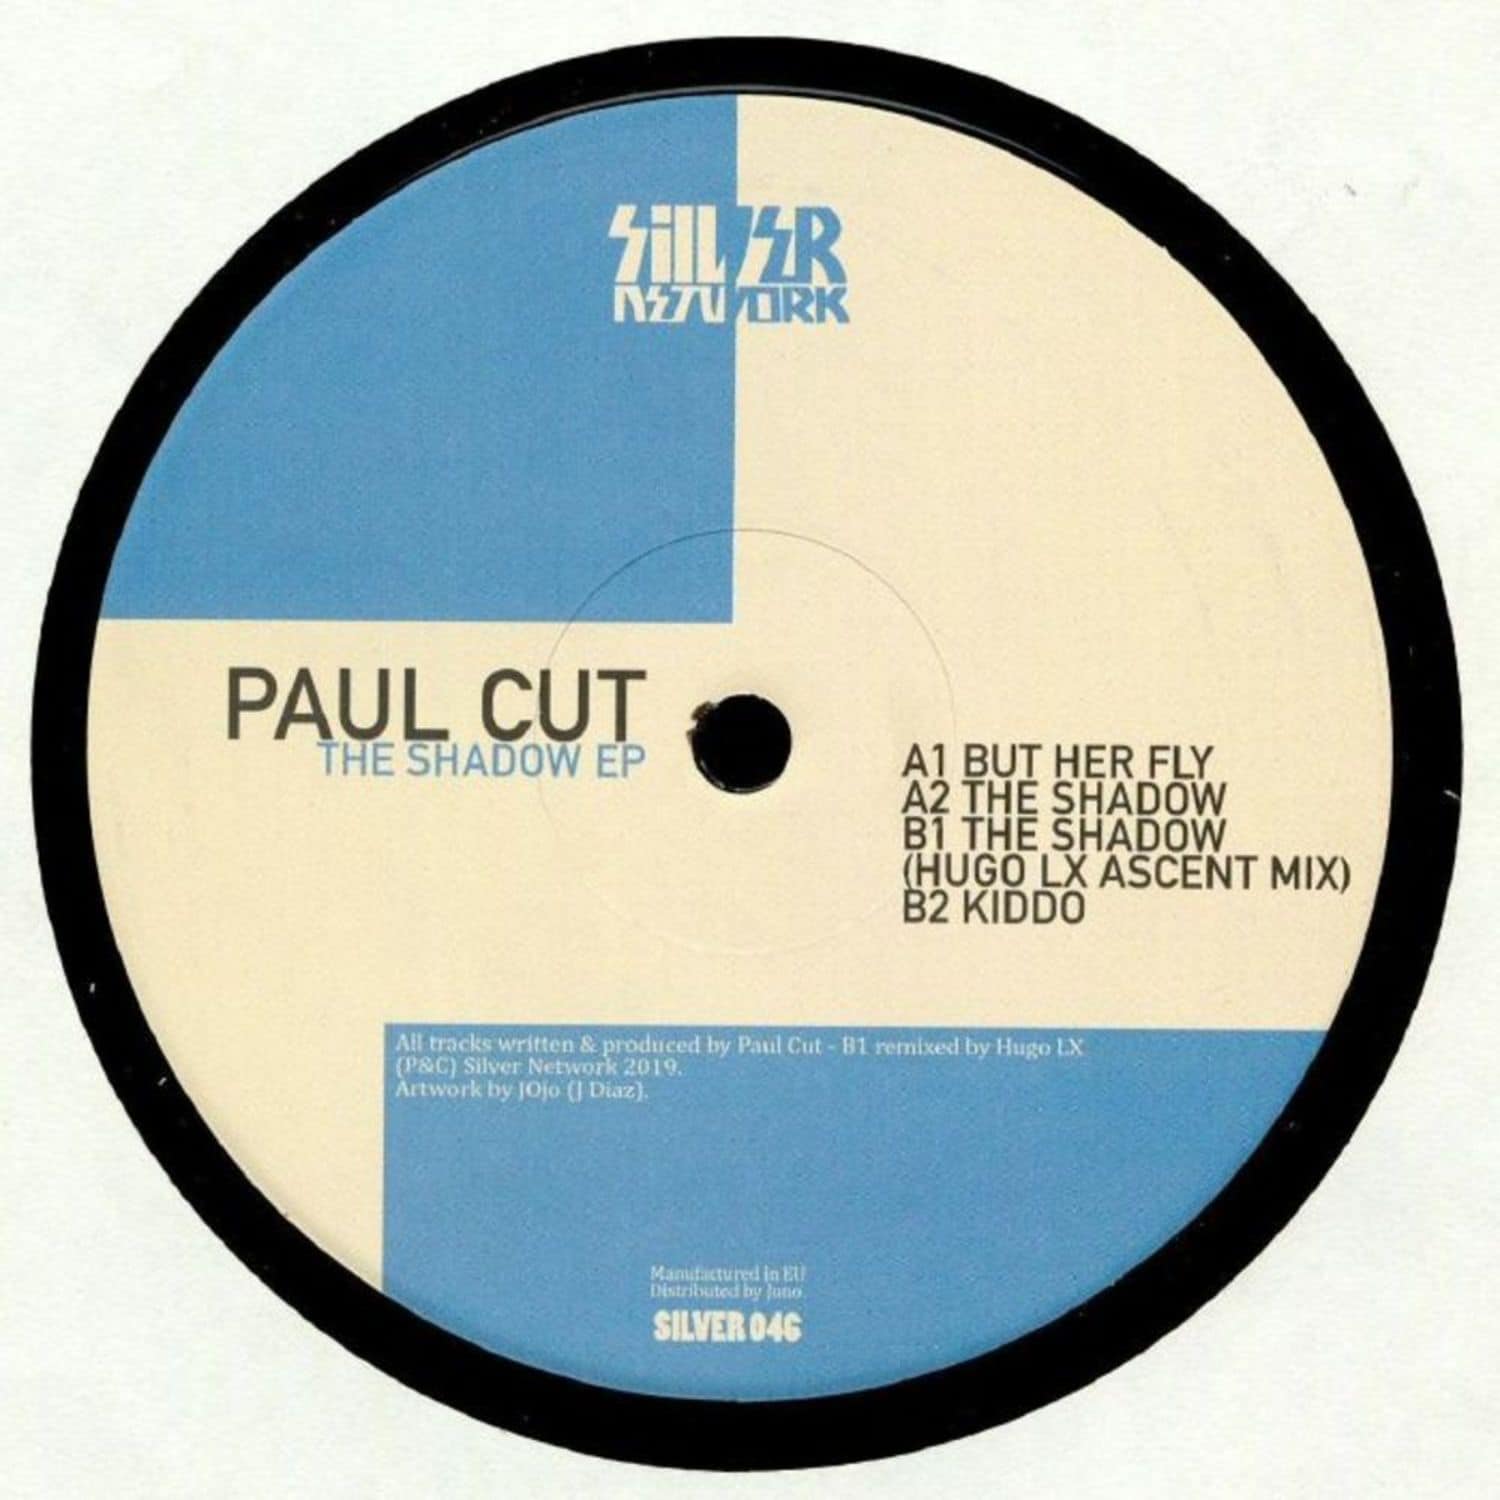 Paul Cut - THE SHADOW EP 